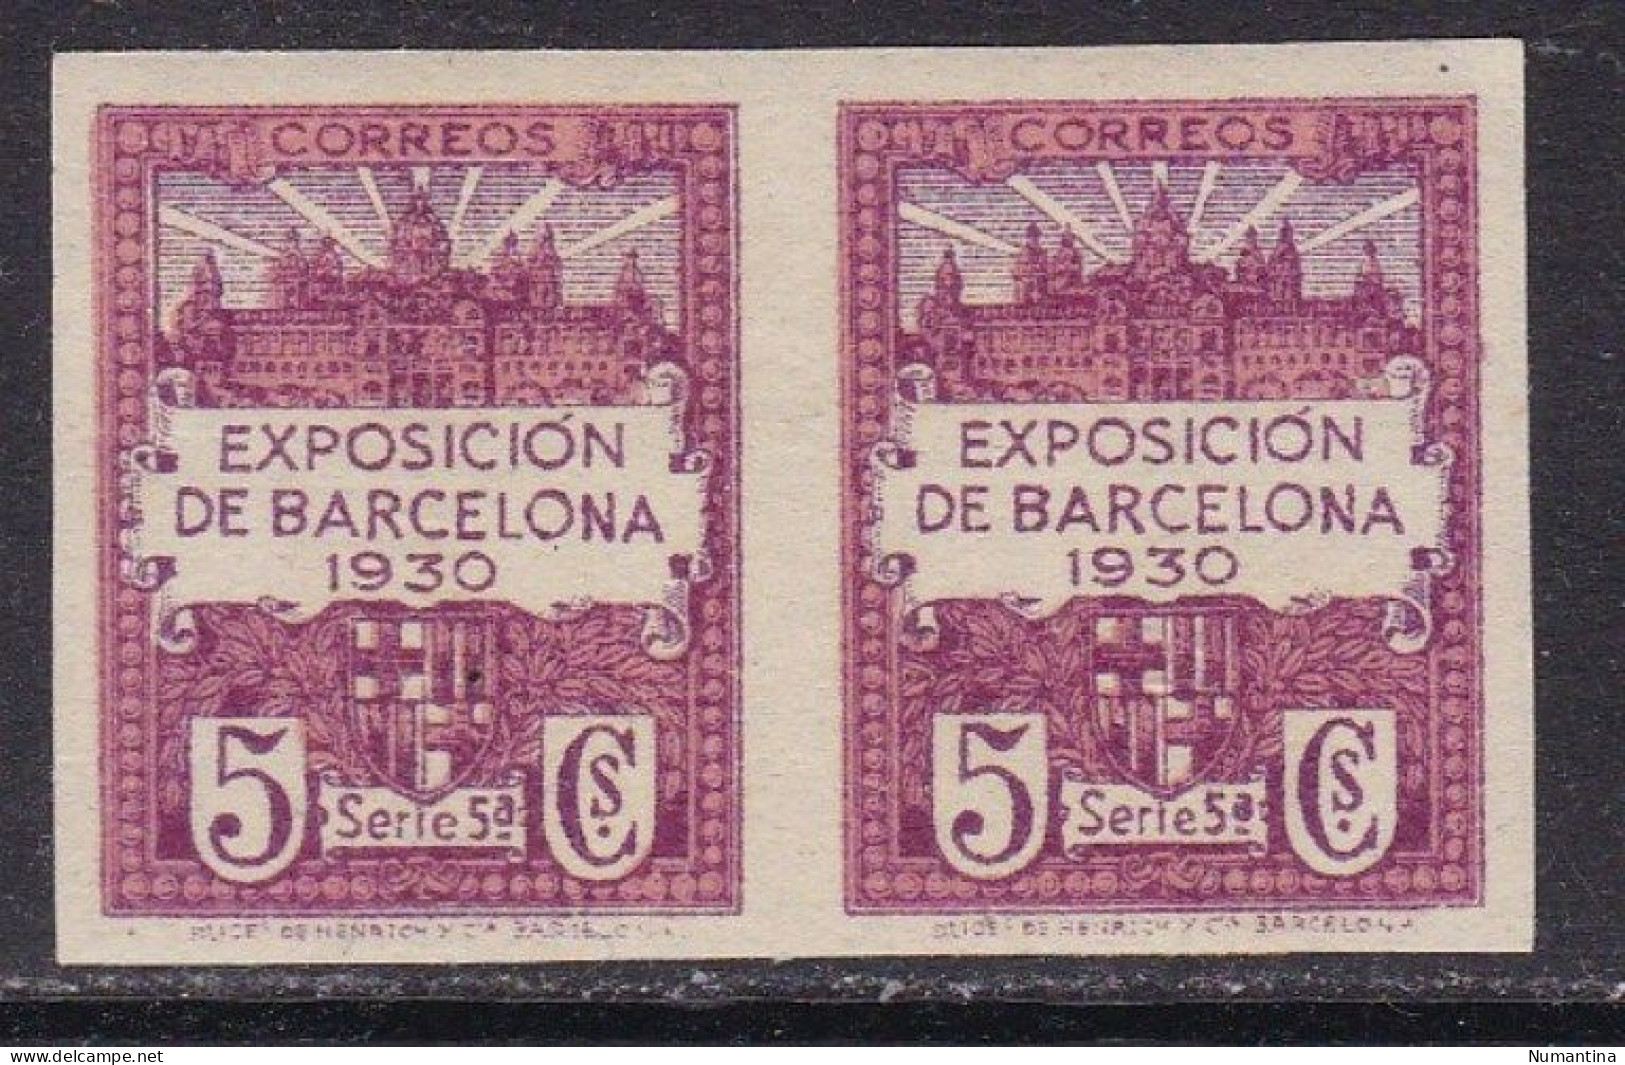 1929 - España - Barcelona - Edifil 5s - Sin Dentar - Bloque 2 - Exposicion De Barcelona 1930 - MNH - Barcelona